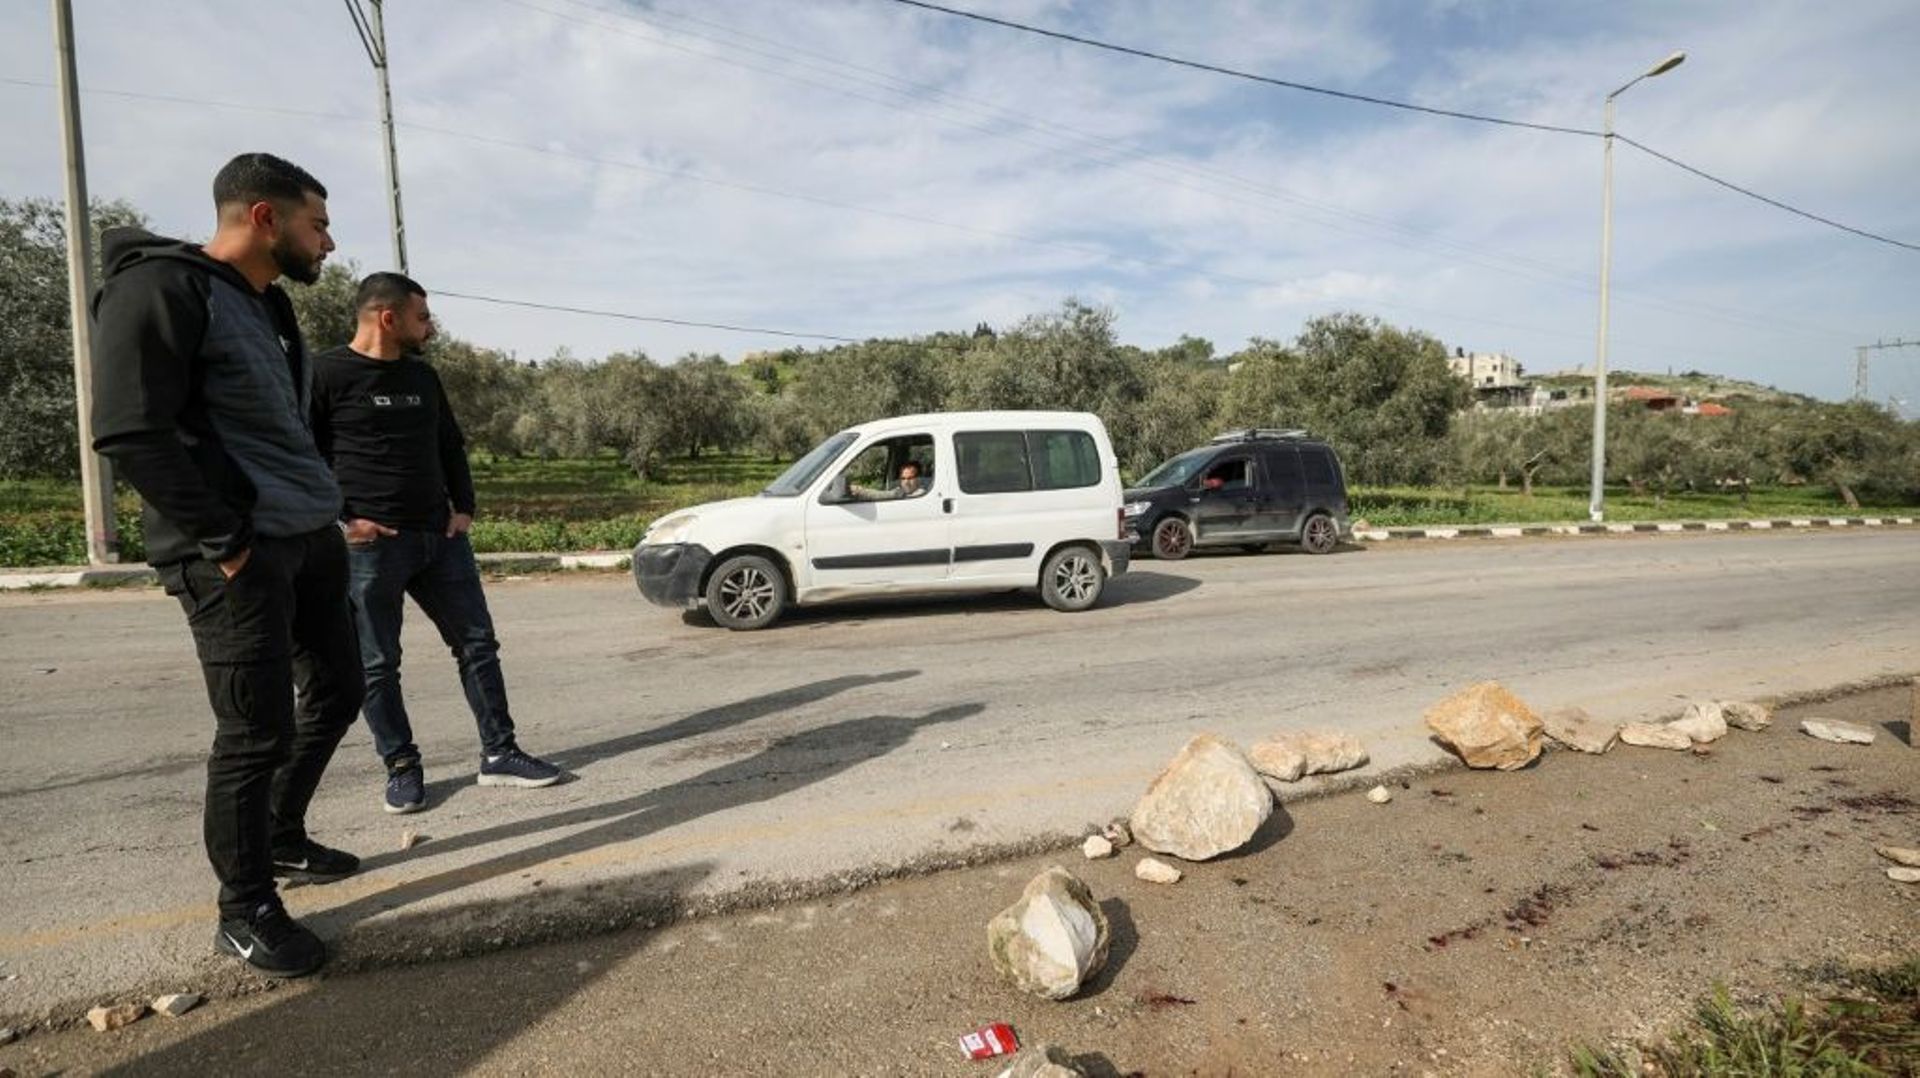 Les forces israéliennes ont tué trois membres du mouvement palestinien Jihad islamique lors d’une opération en Cisjordanie